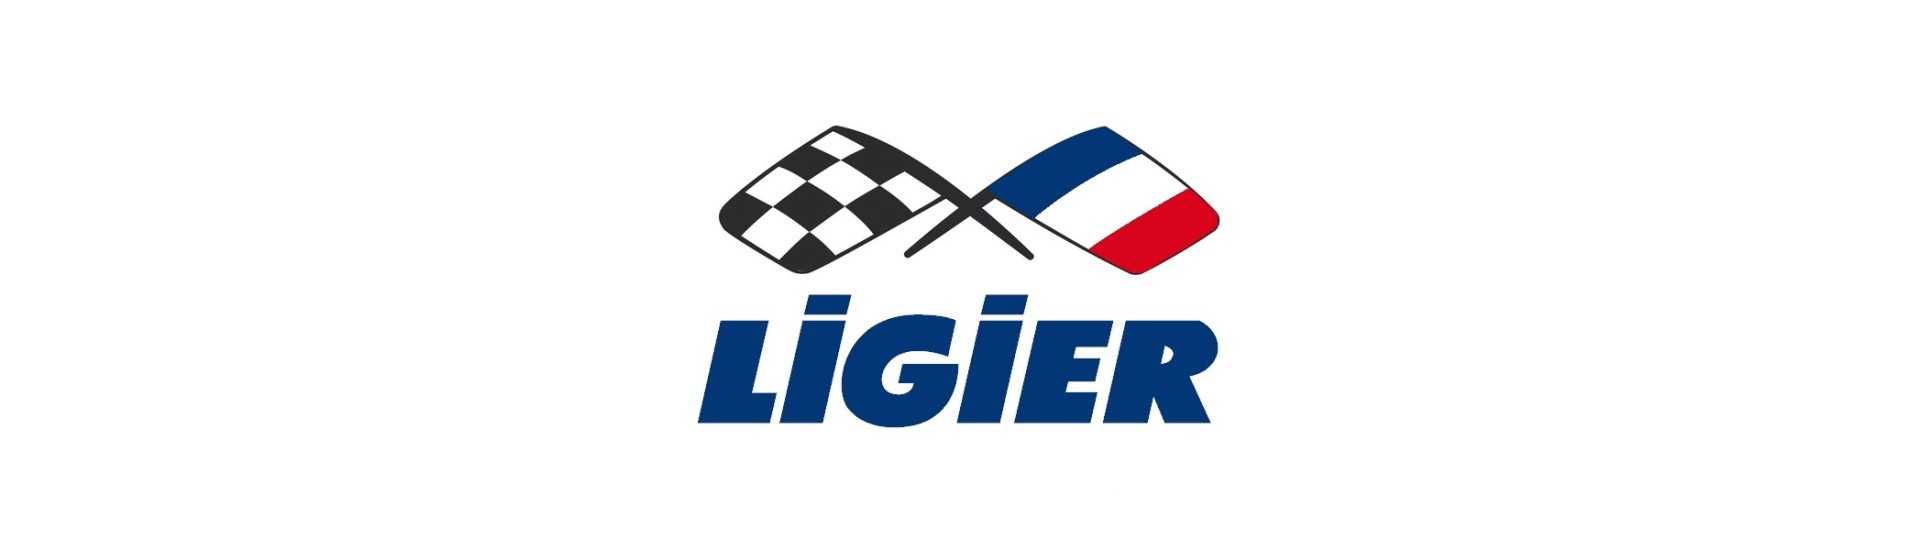 Cea mai bună roată de rezervă pentru mașină fără permis Ligier